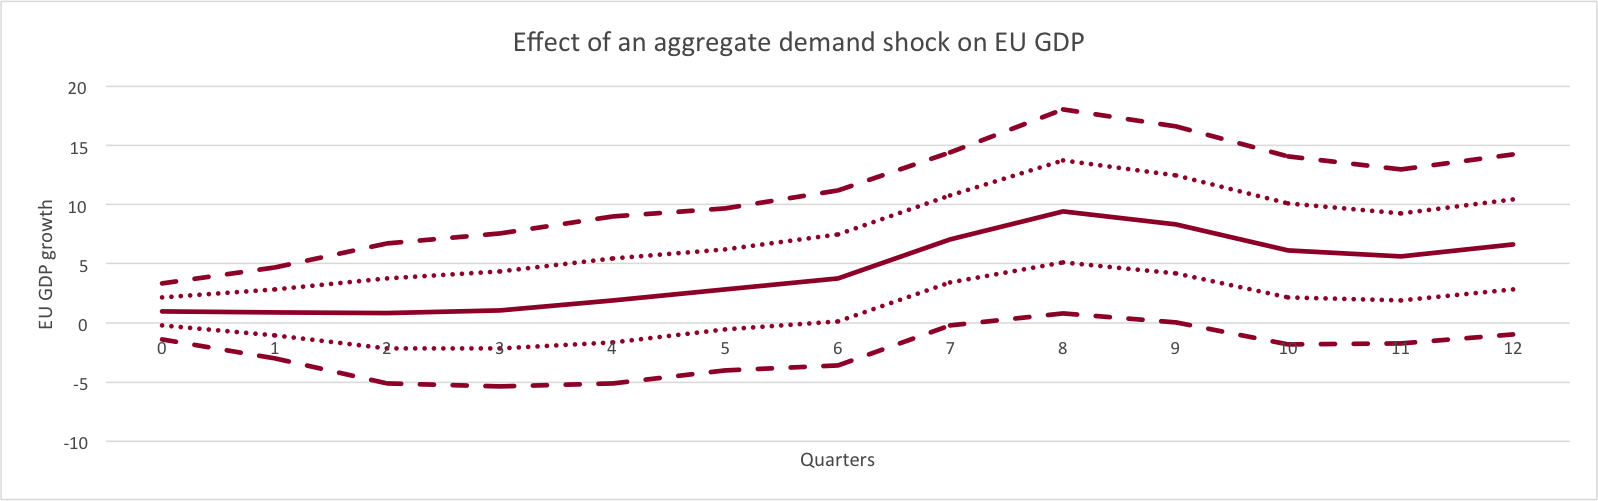 Effect of an Aggregate Demand Shock on EU GDP